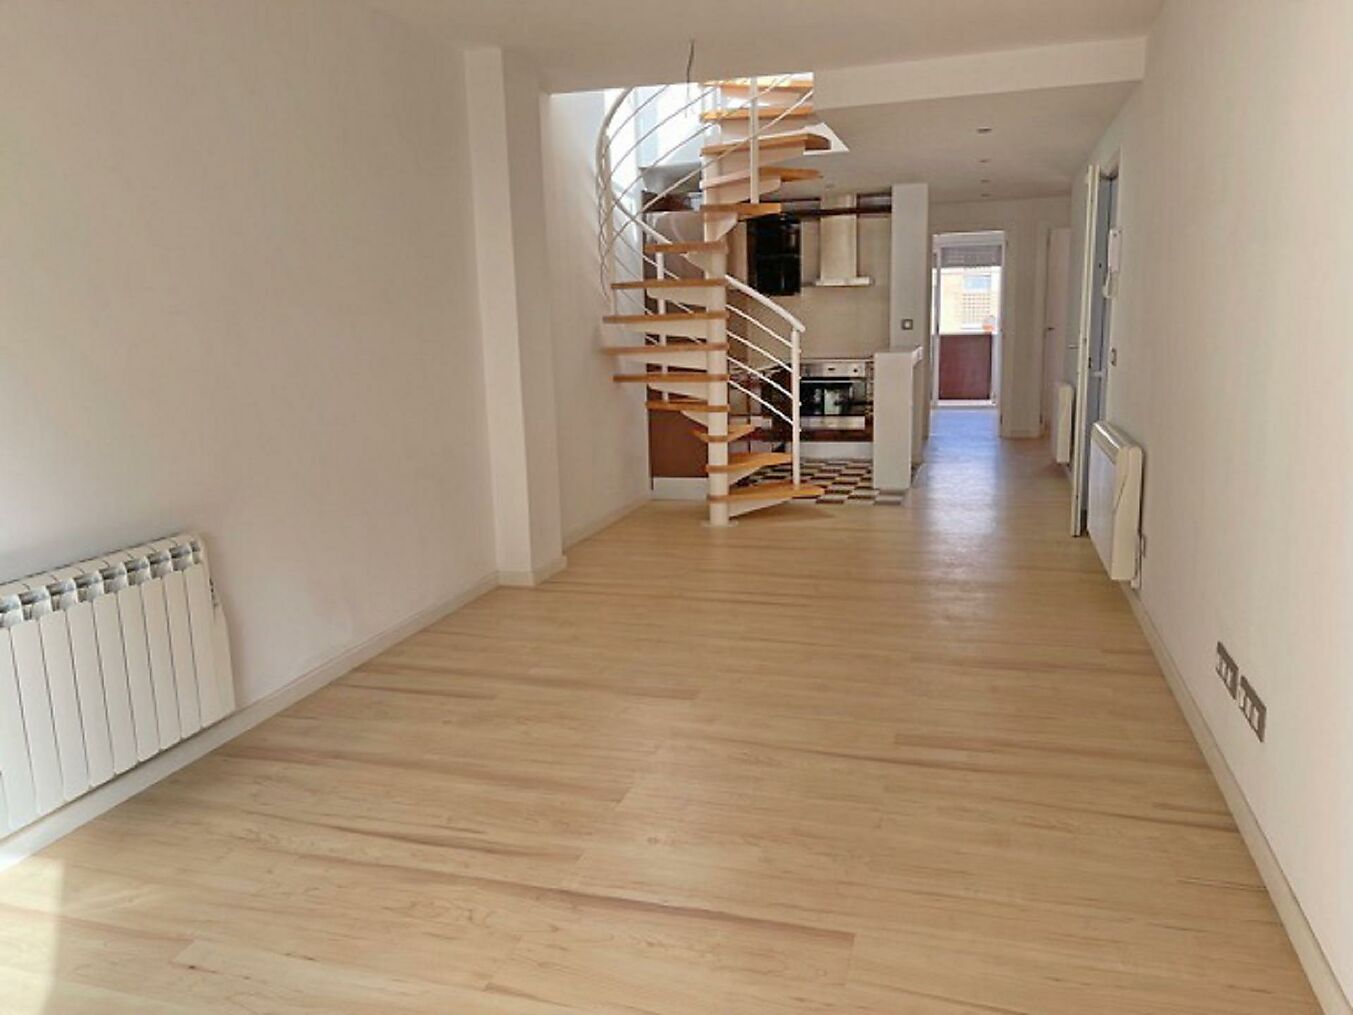 Duplex apartment for sale in Sant Antoni de Calonge